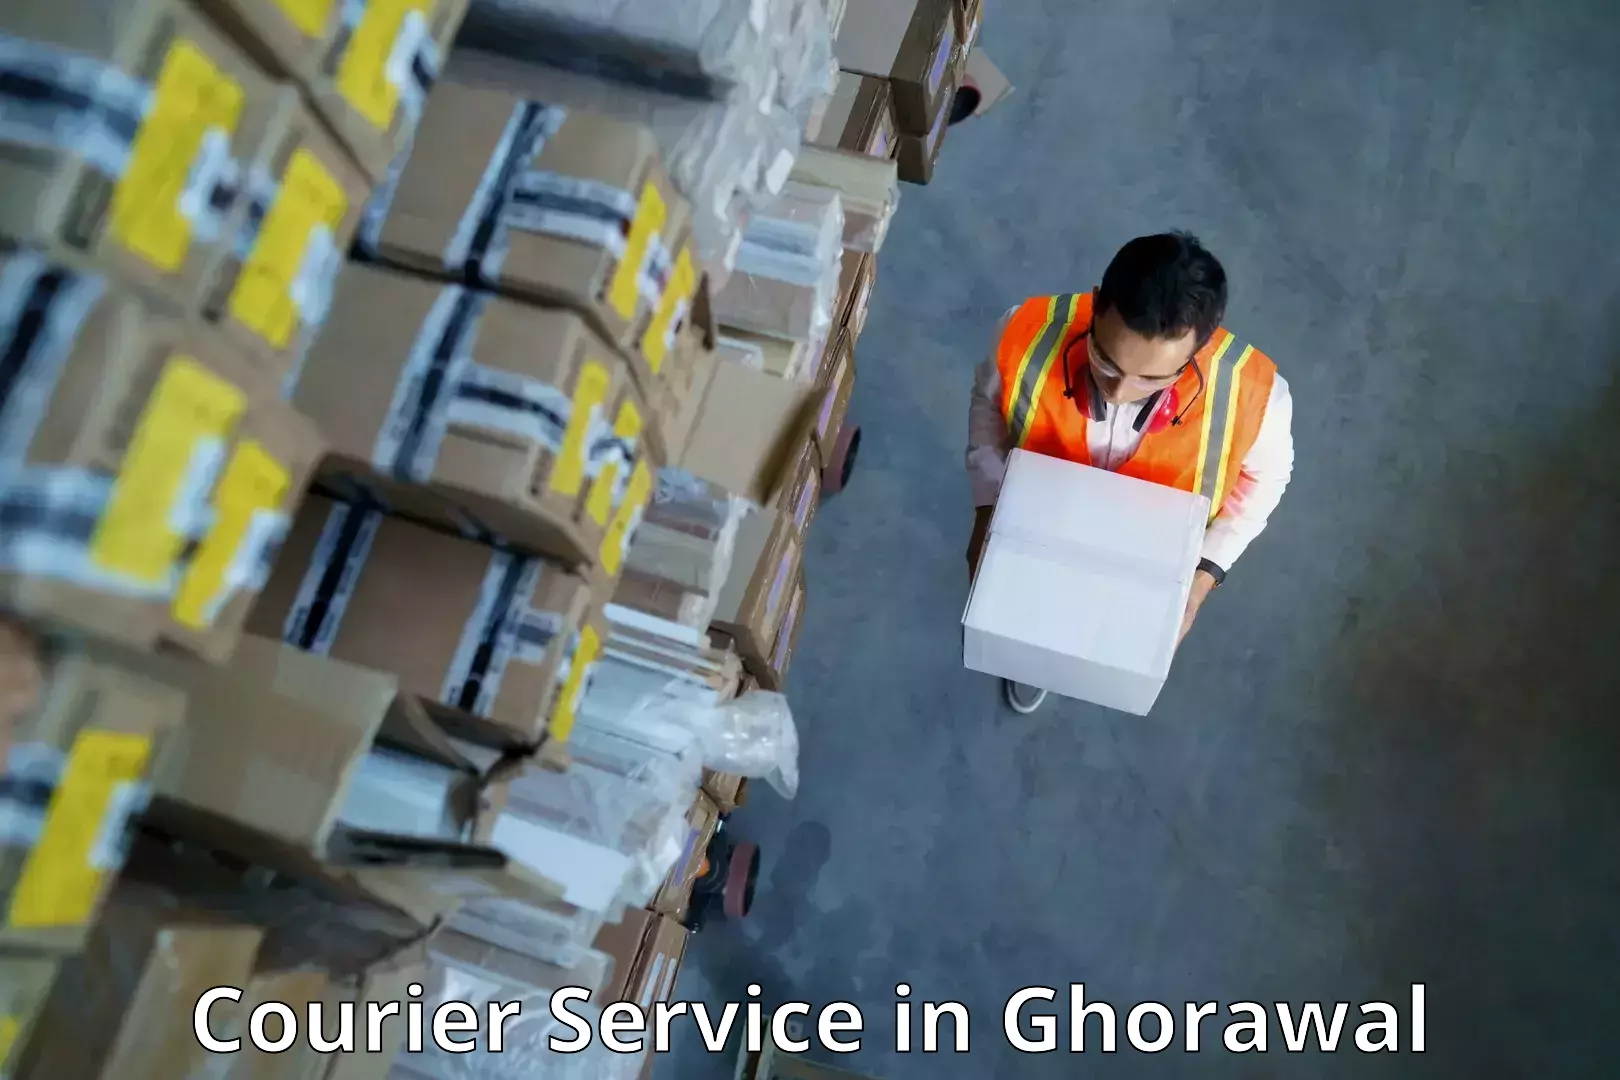 Digital courier platforms in Ghorawal